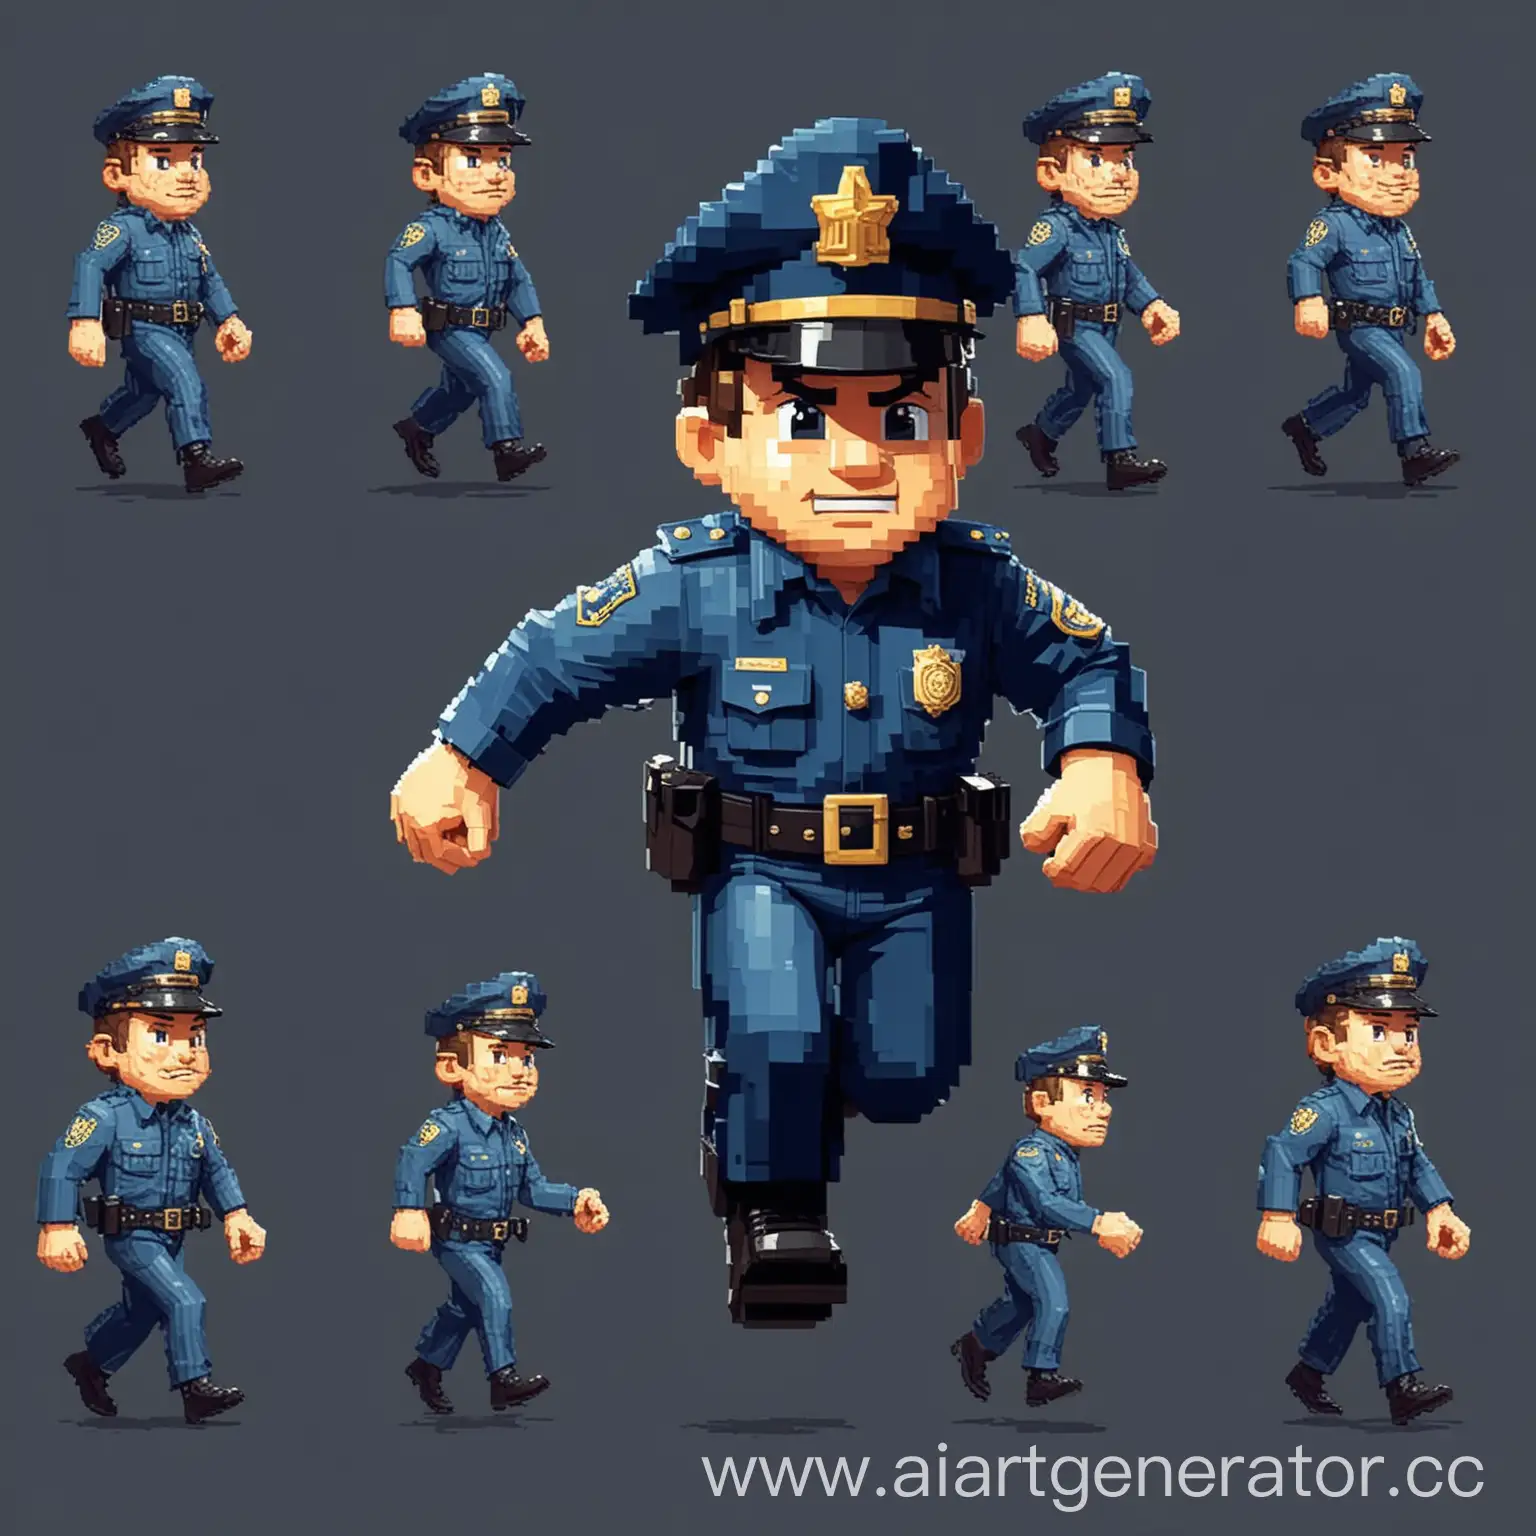 маленький бегающий полицейский как в американских мультиках 60х годов
изобразить его в нескольких видах движения как в пиксельной игре
изобразить его в 8-битном пиксельном виде